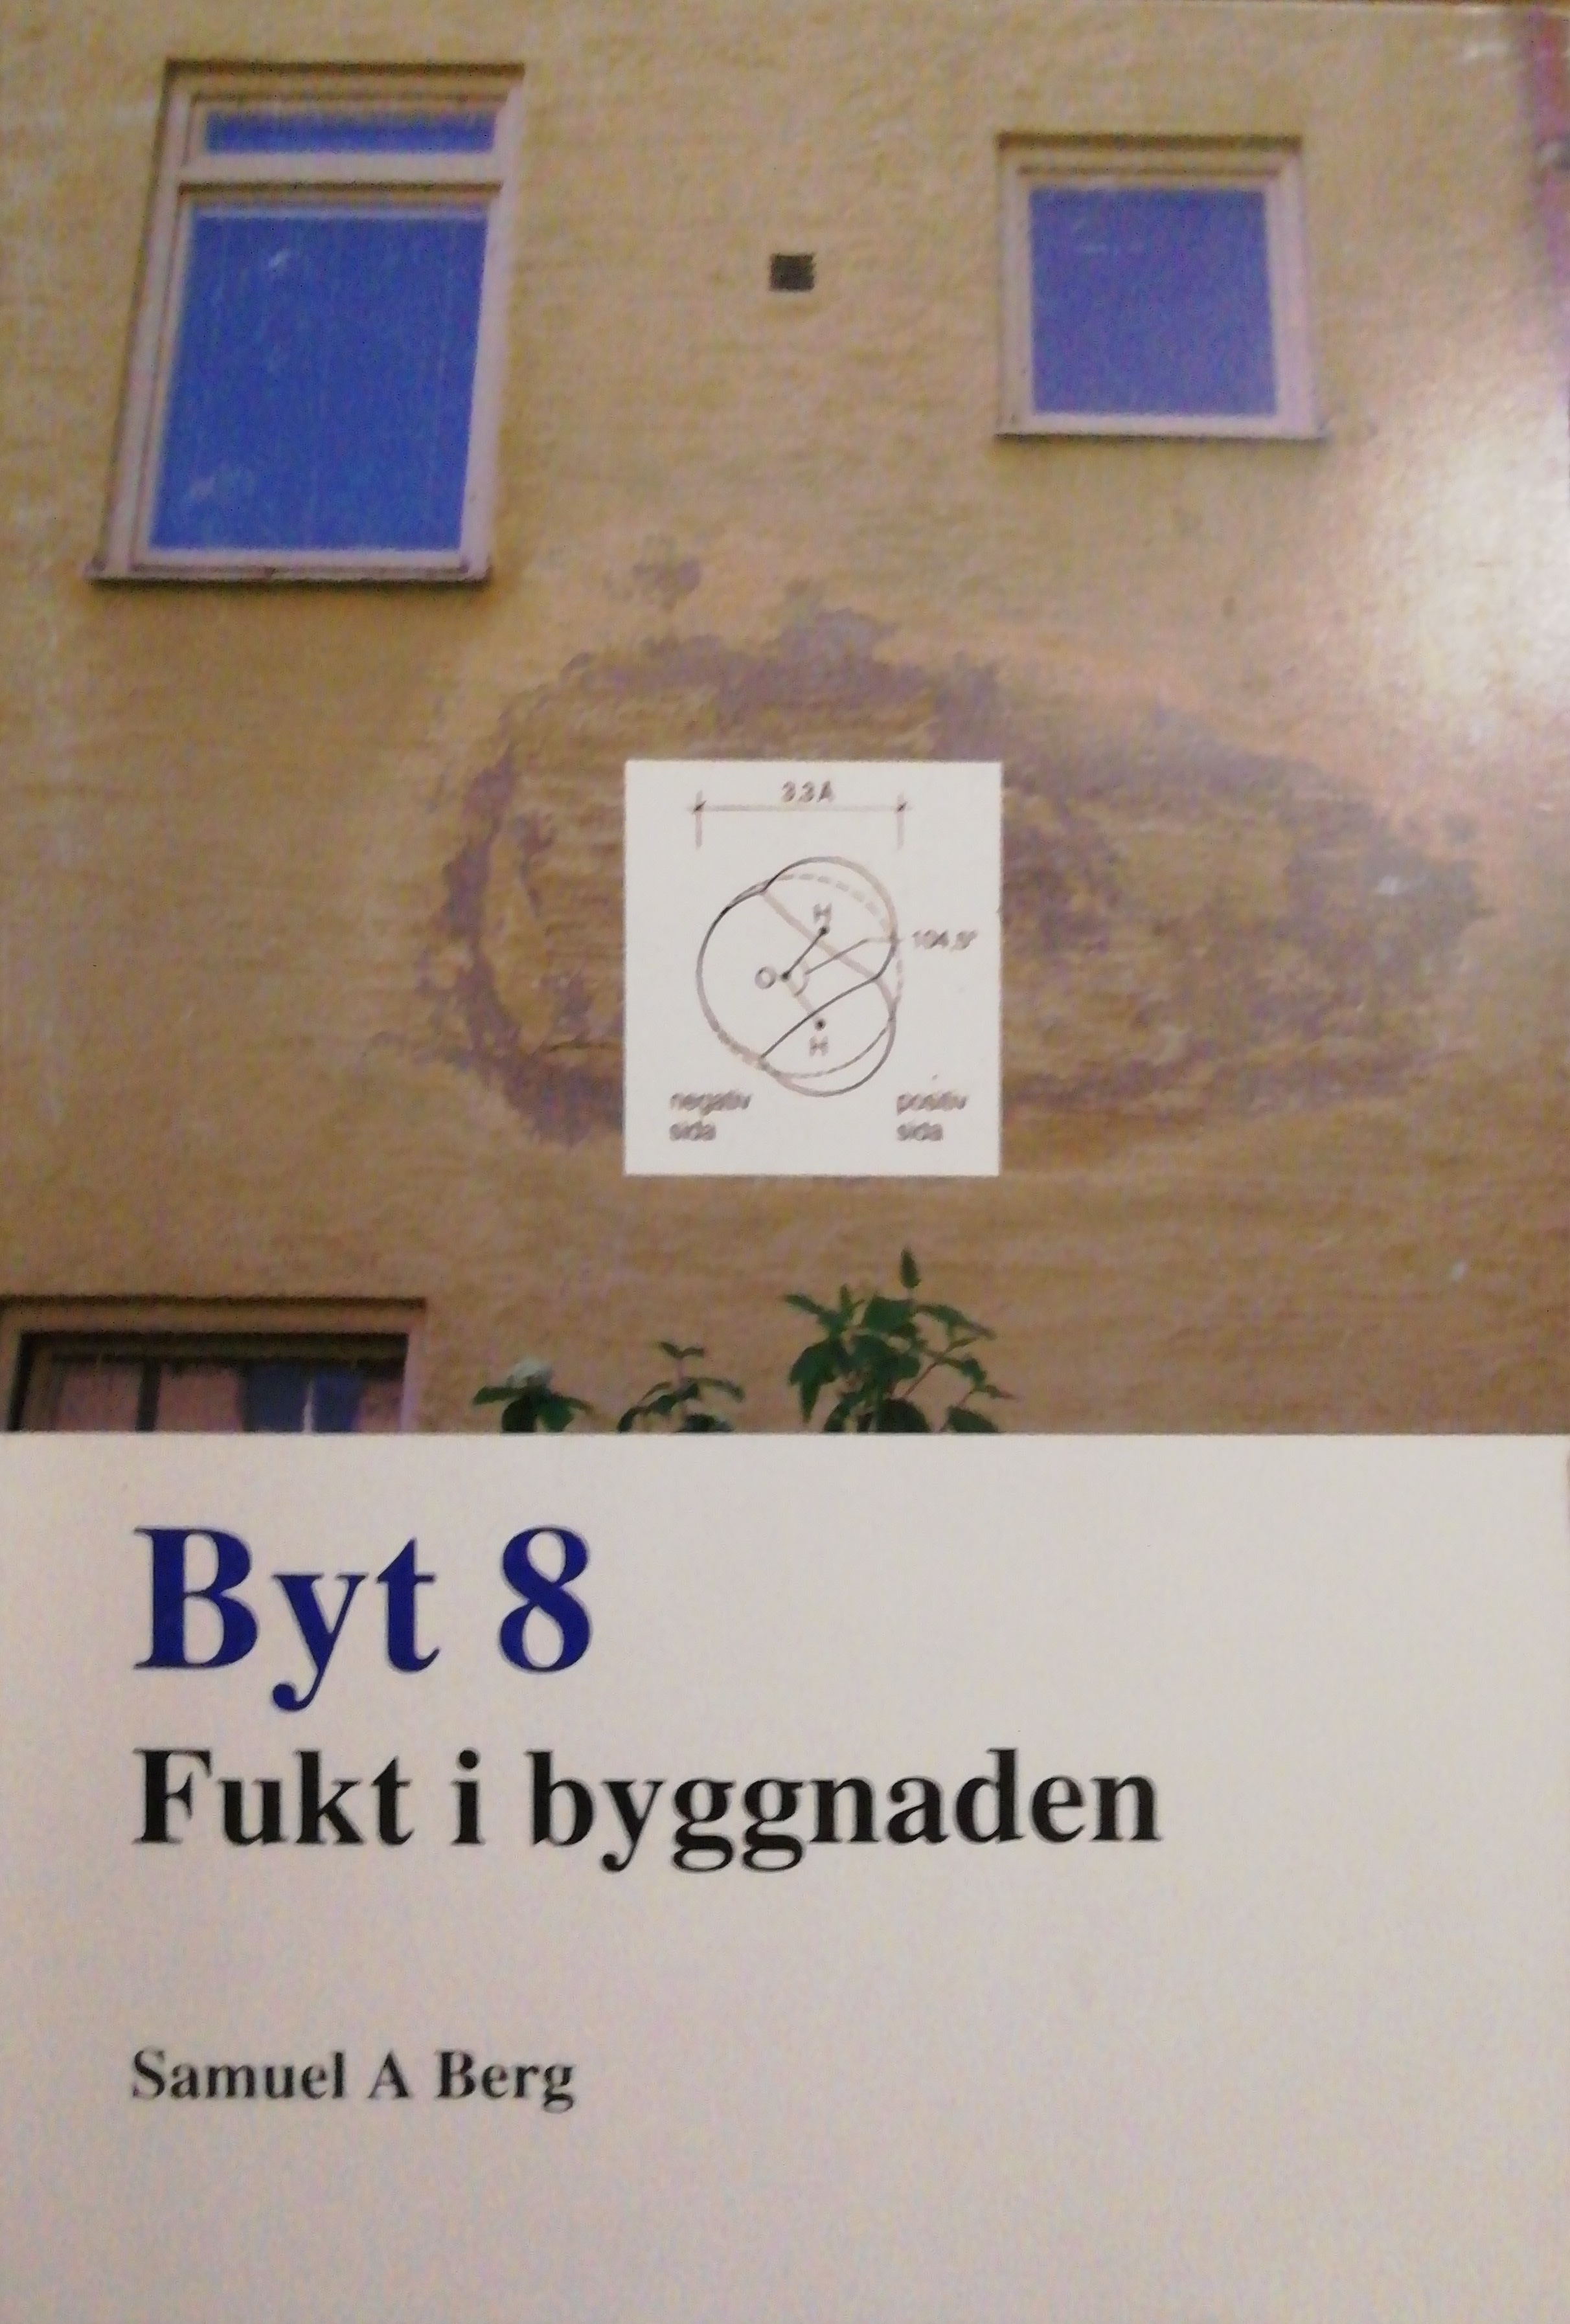 Fukt i byggnaden: byt 8; Samuel A. Berg; 2011